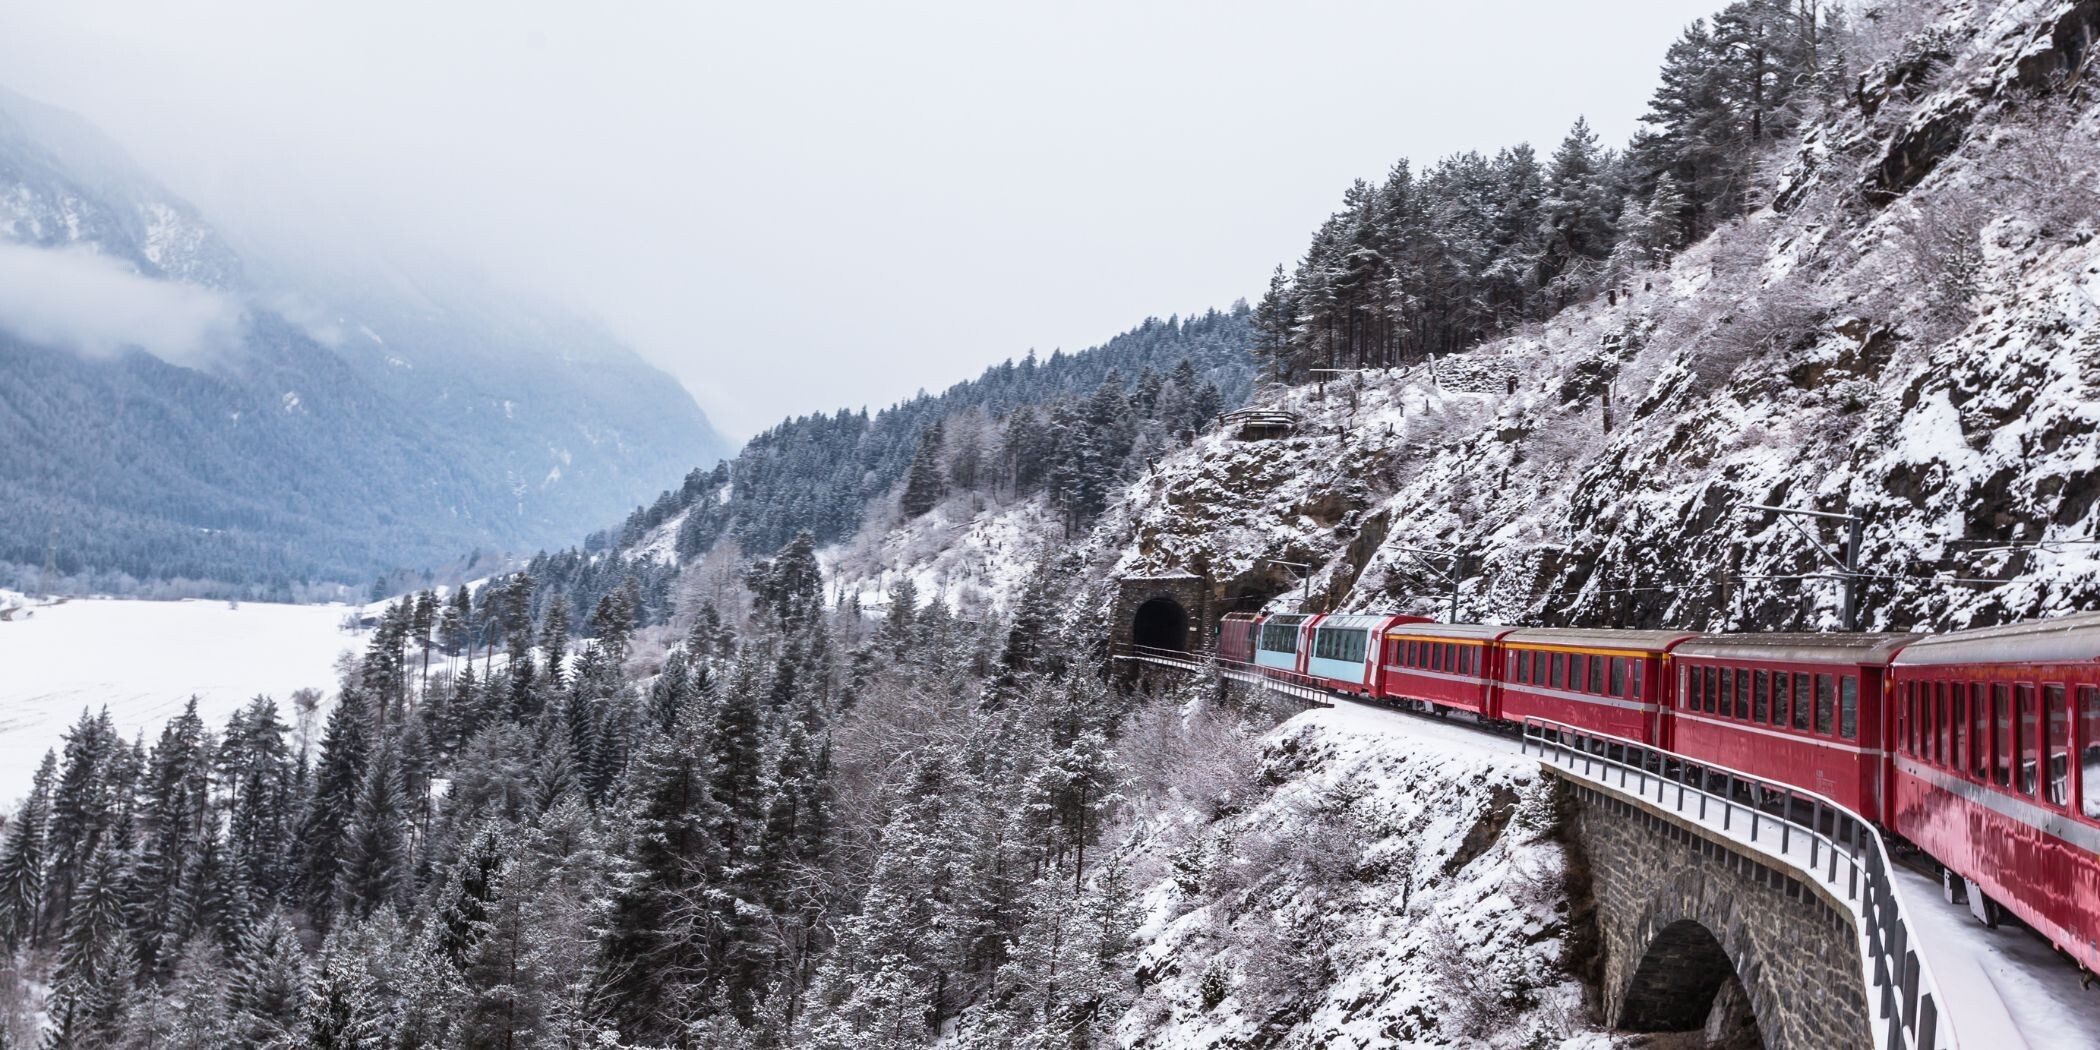 Il Glacier Express entra in un tunnel in un paesaggio invernale mozzafiato.